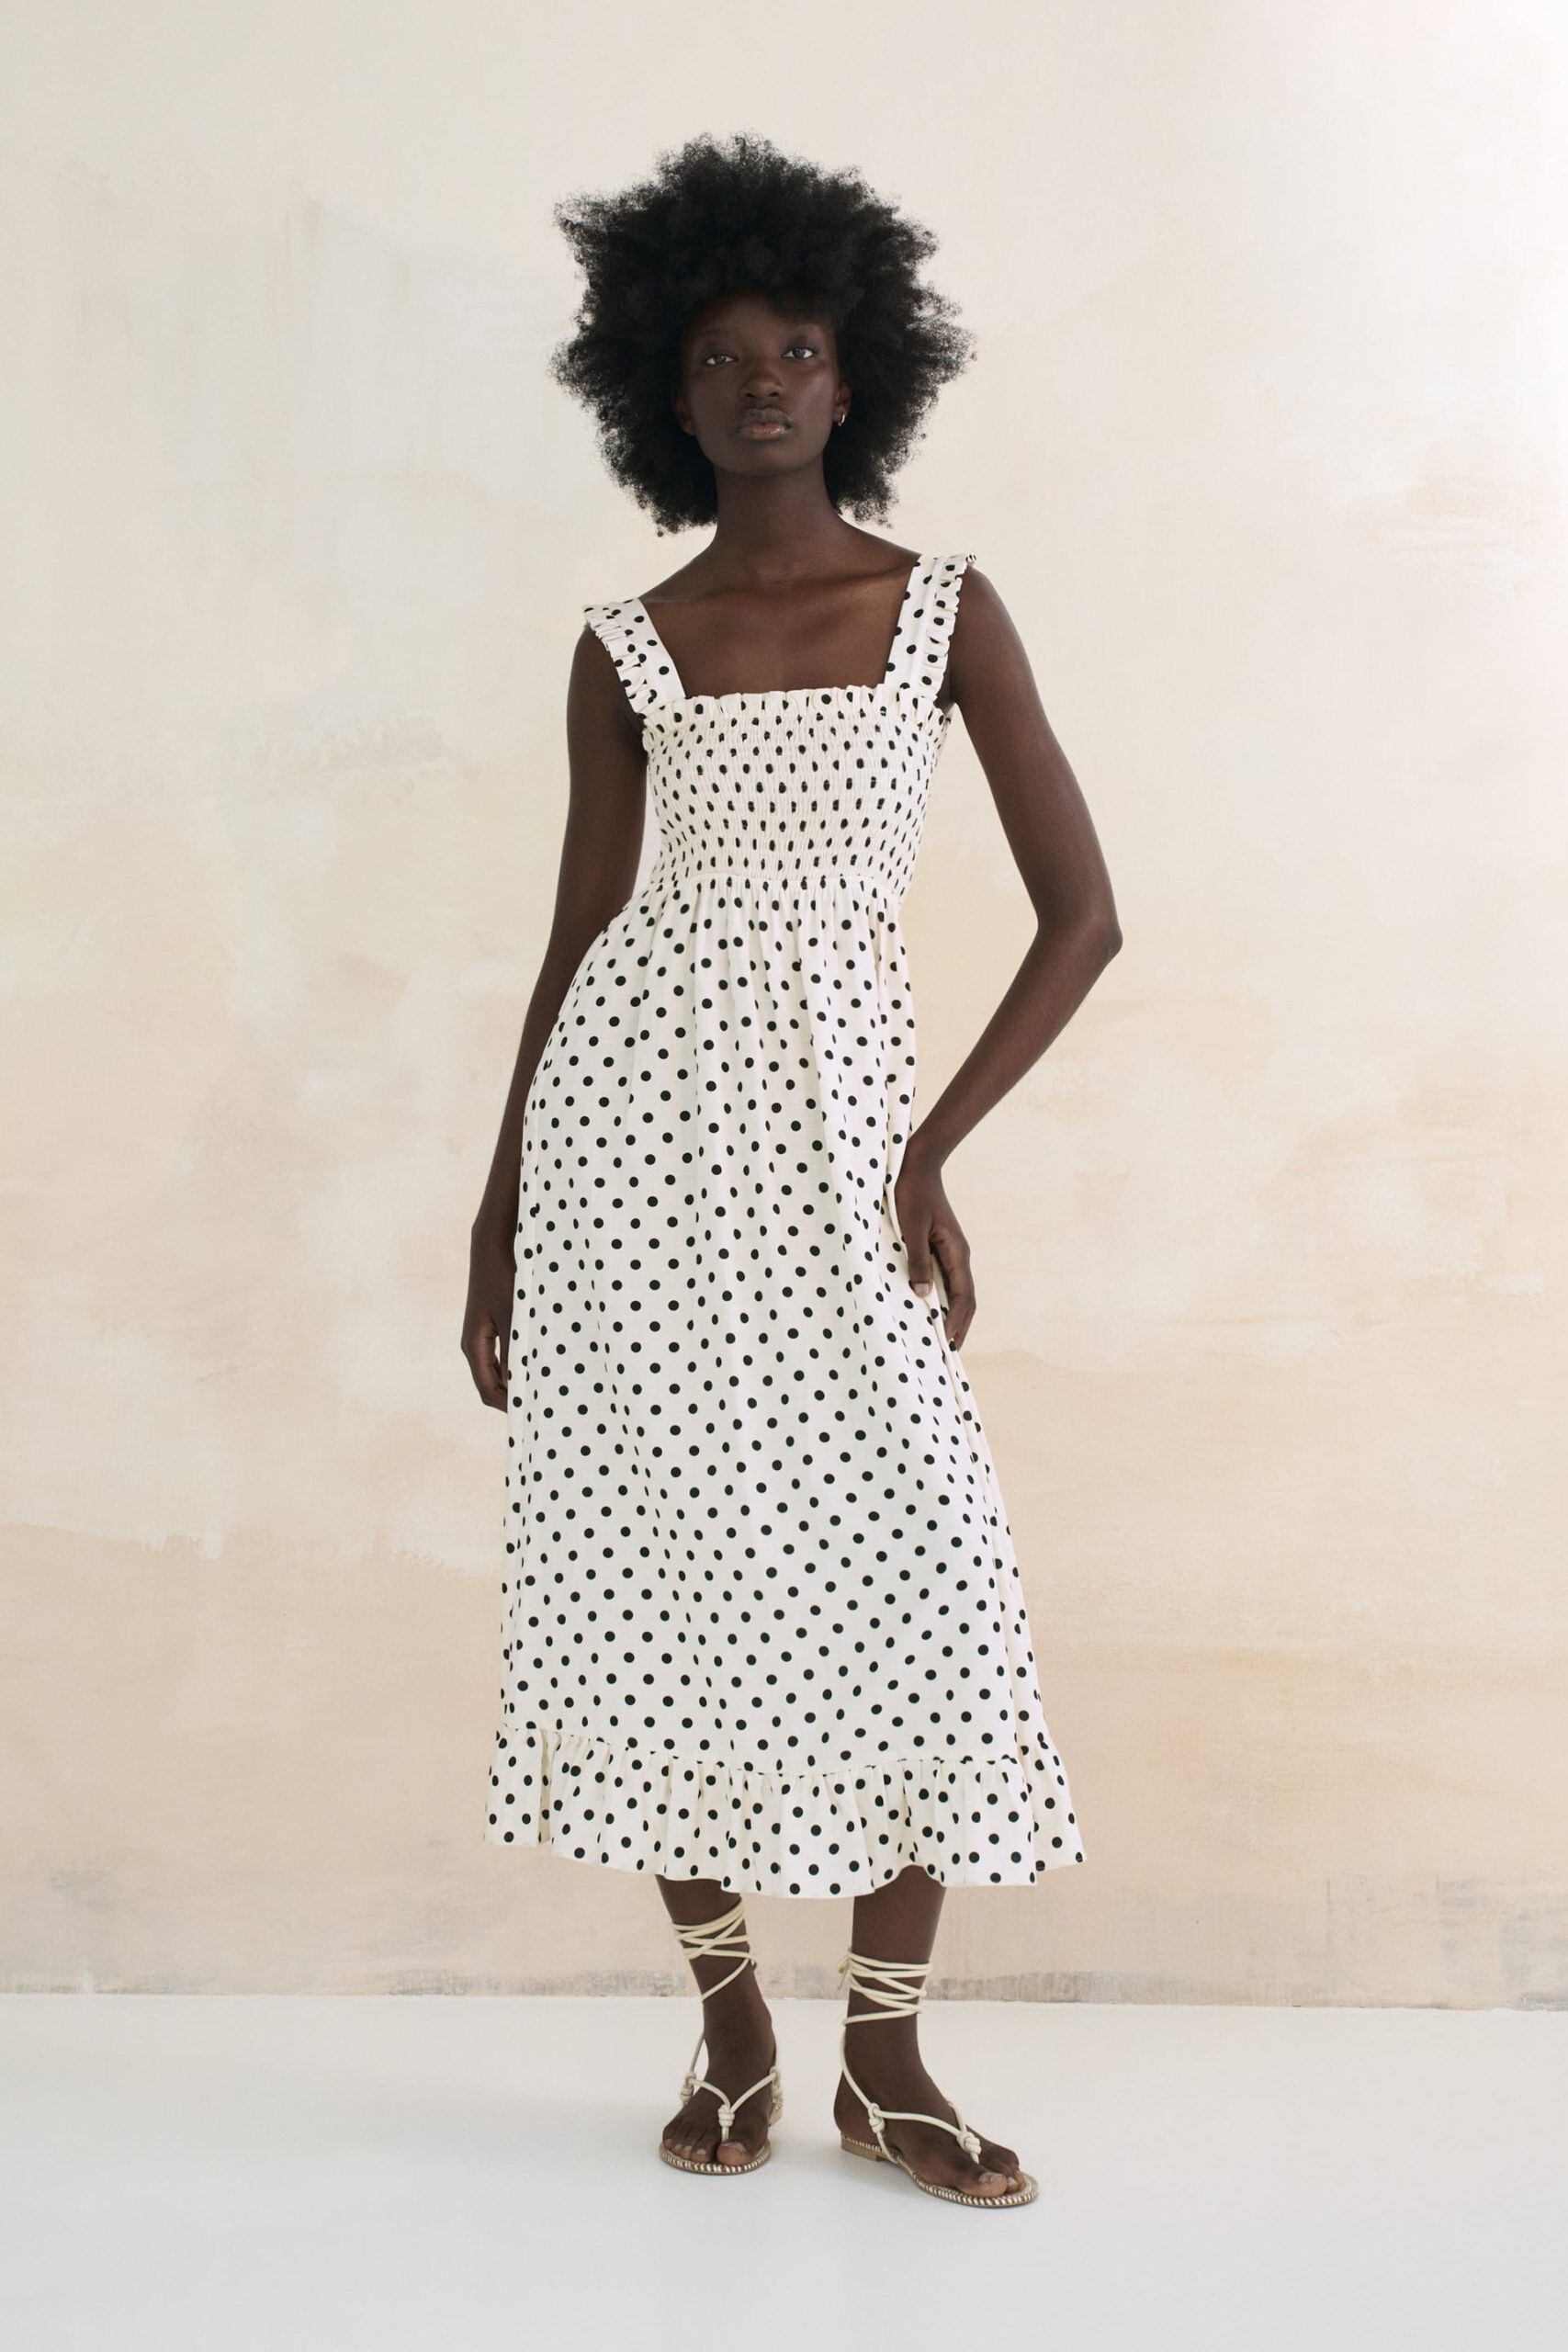 Mode kjoler med prikker er sommersæsonens | City Magazine